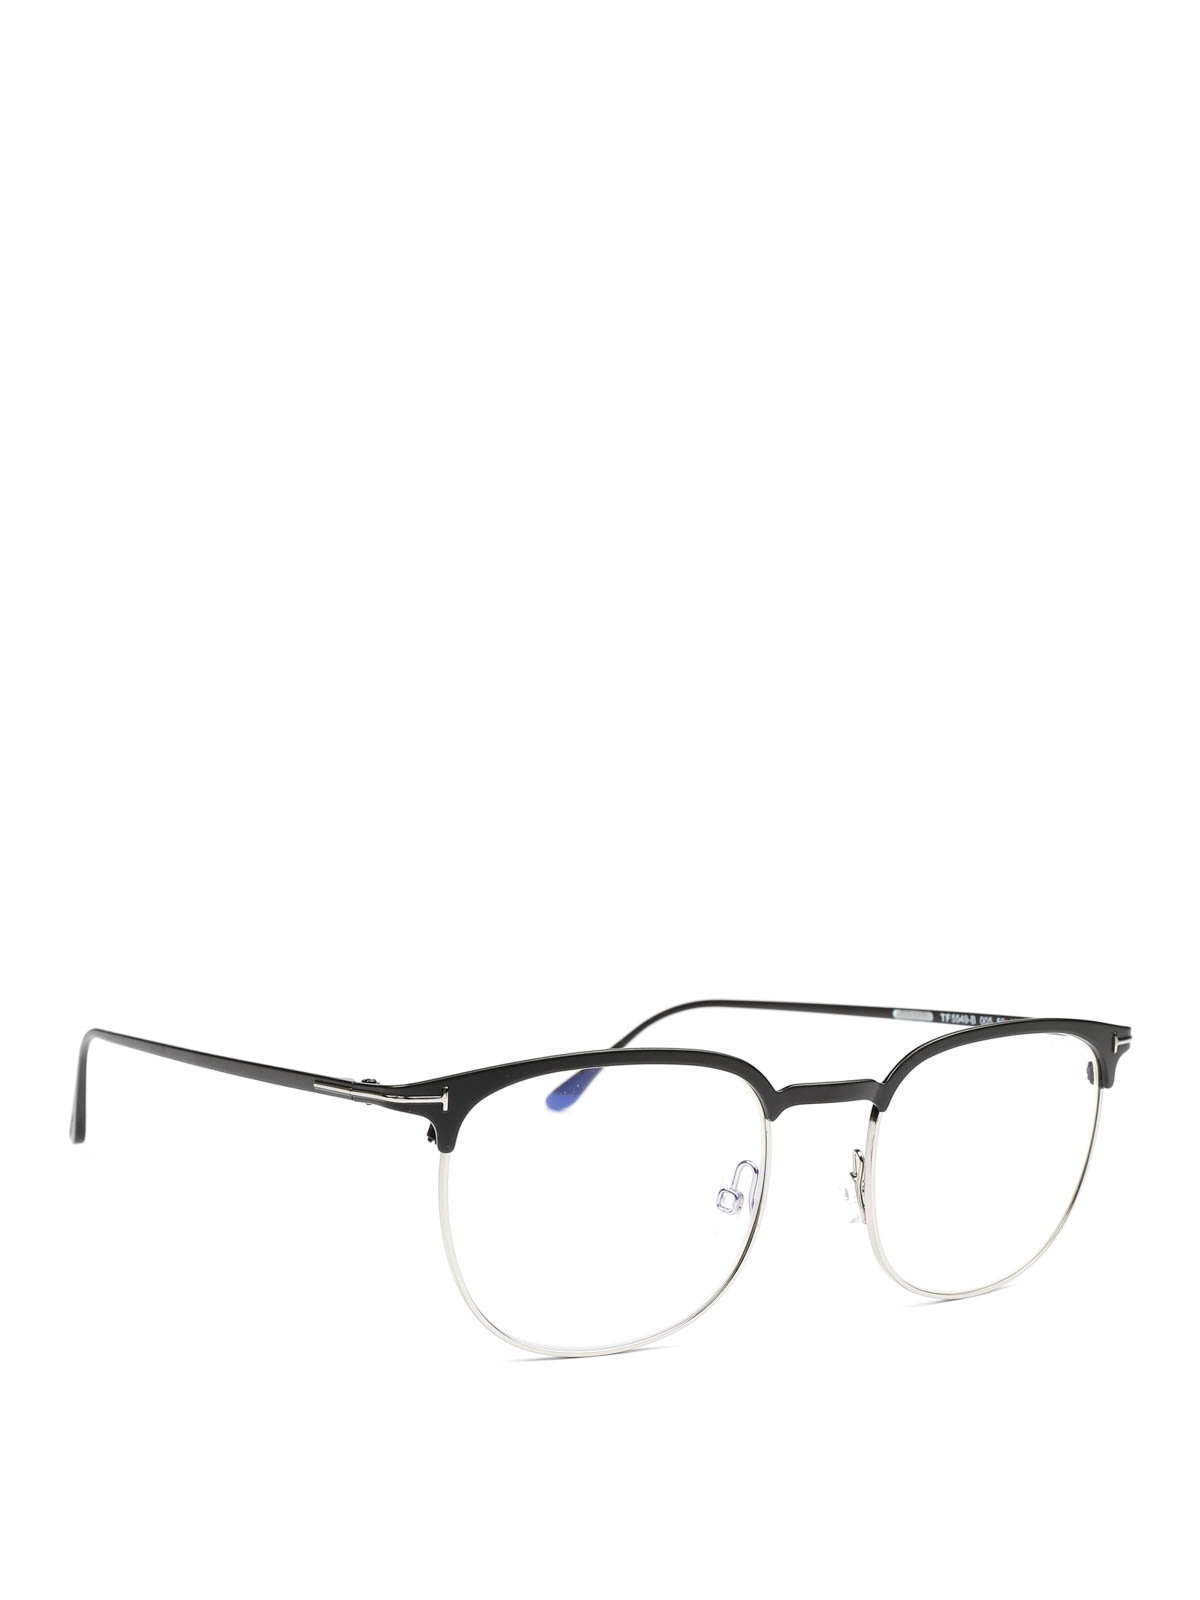 Glasses Tom Ford - Acetate half frame eyeglasses - FT5549B005 